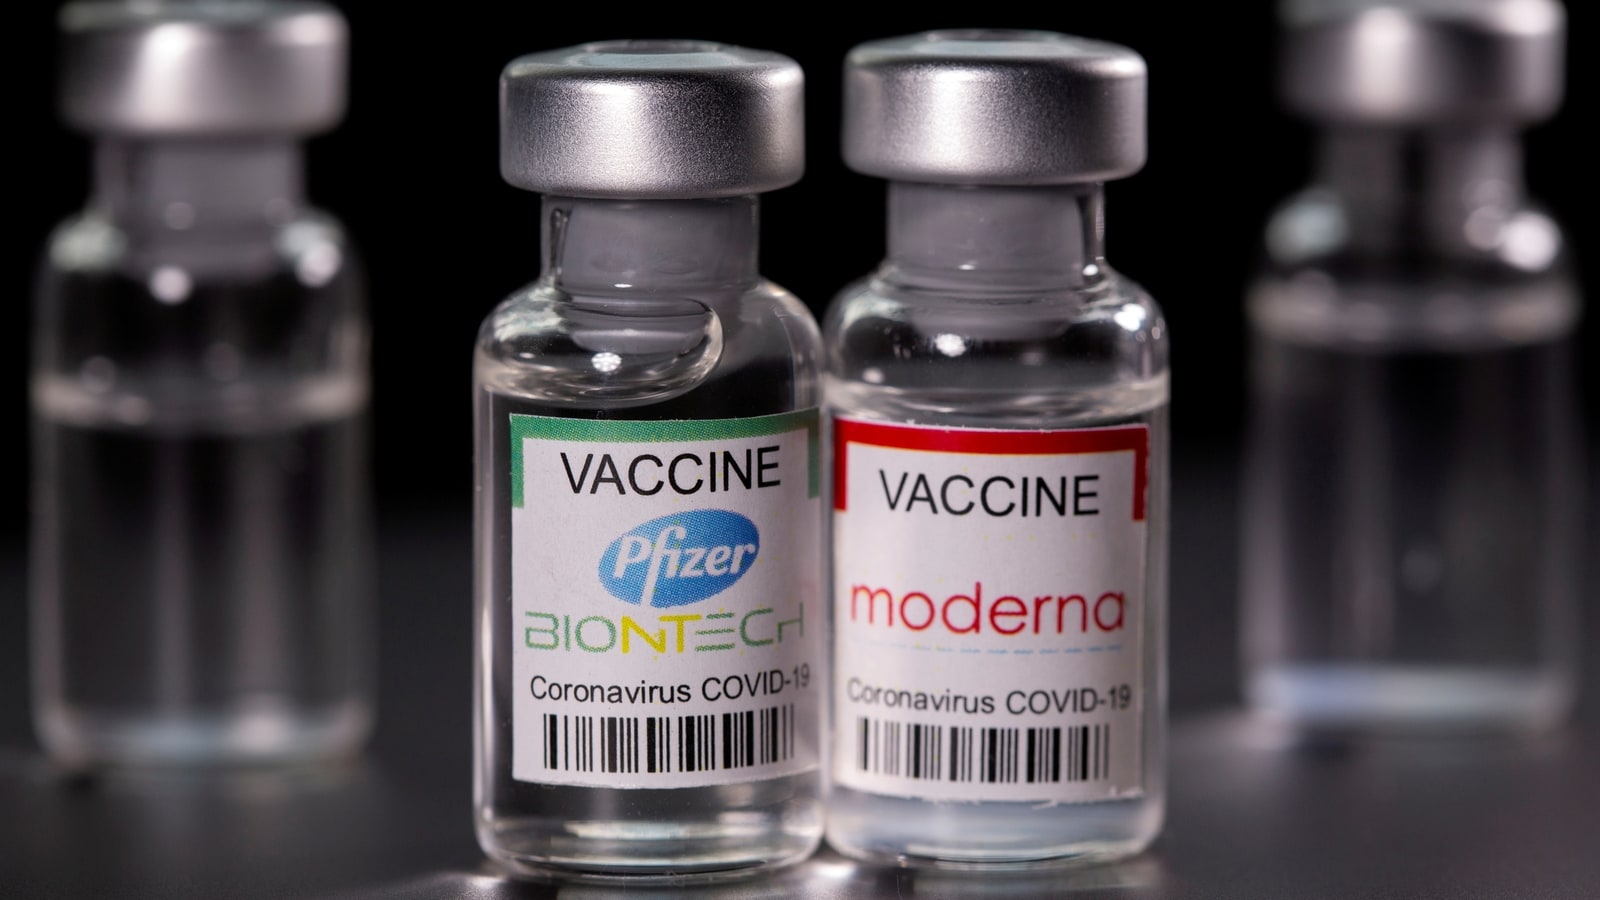 Vaccinazioni Covid-19, arrivati in Veneto i bivalenti  Comirnaty (Pfizer) e Spikevax (Moderna)